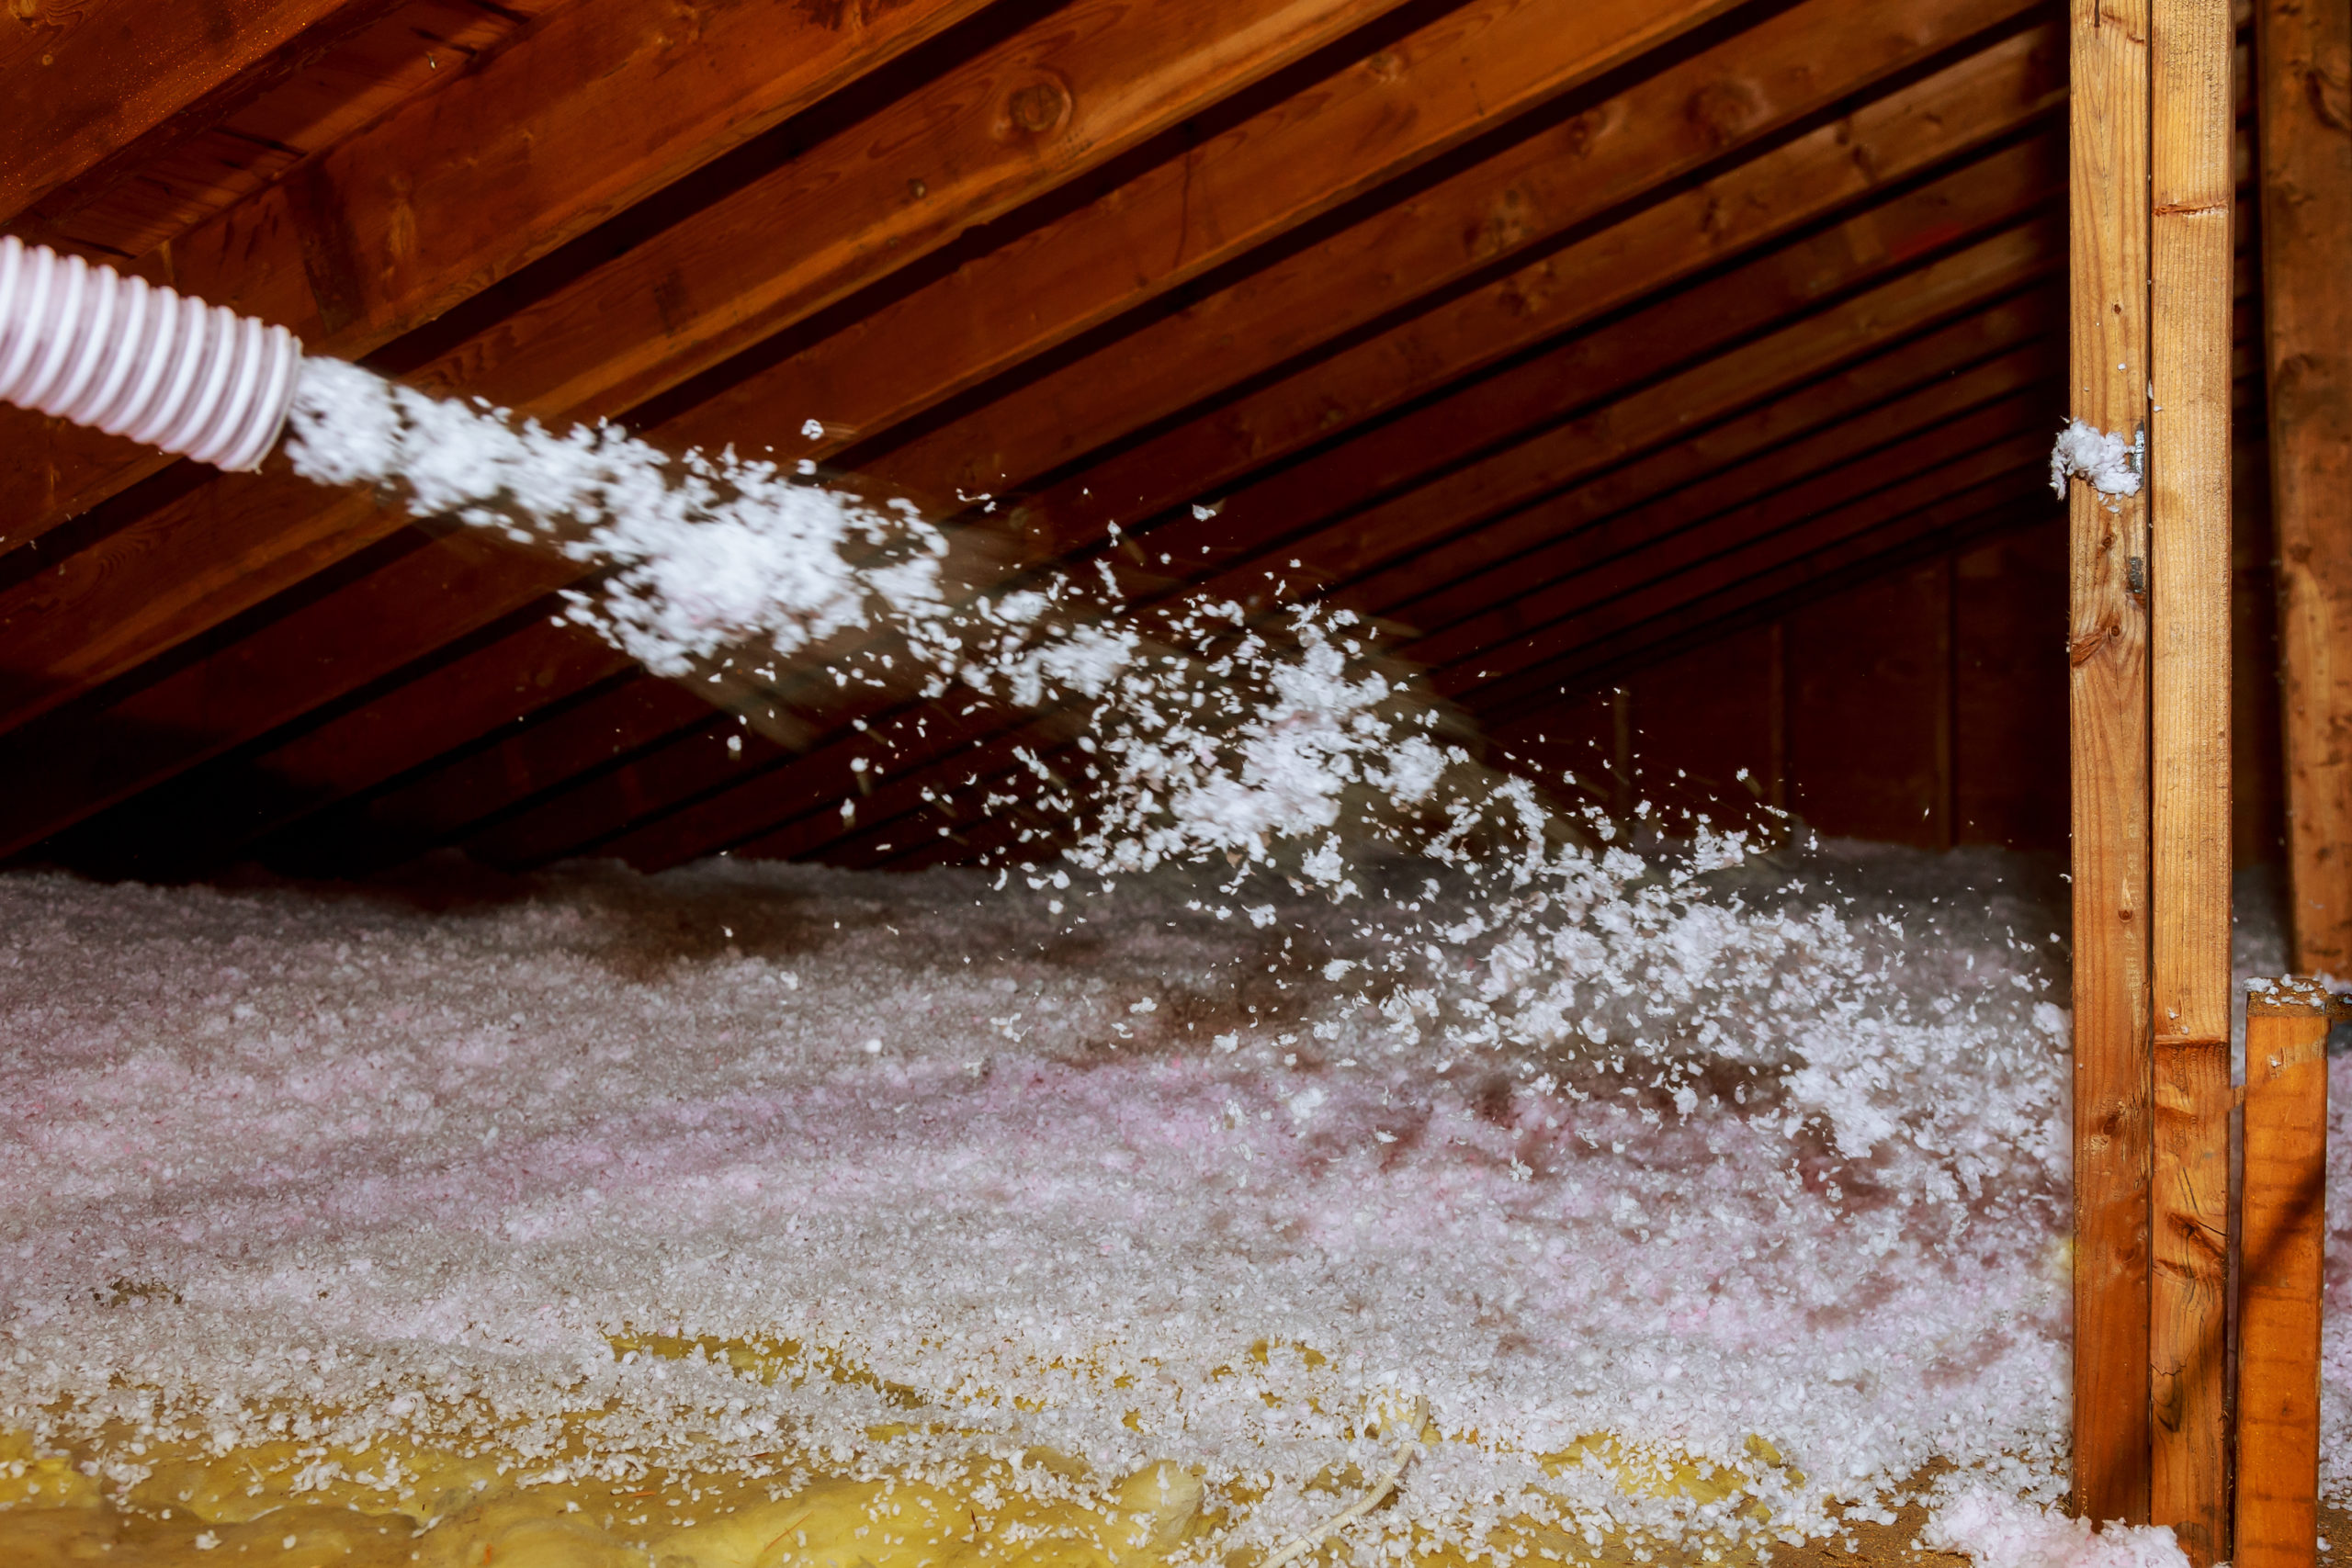 attic blown in insulation installation